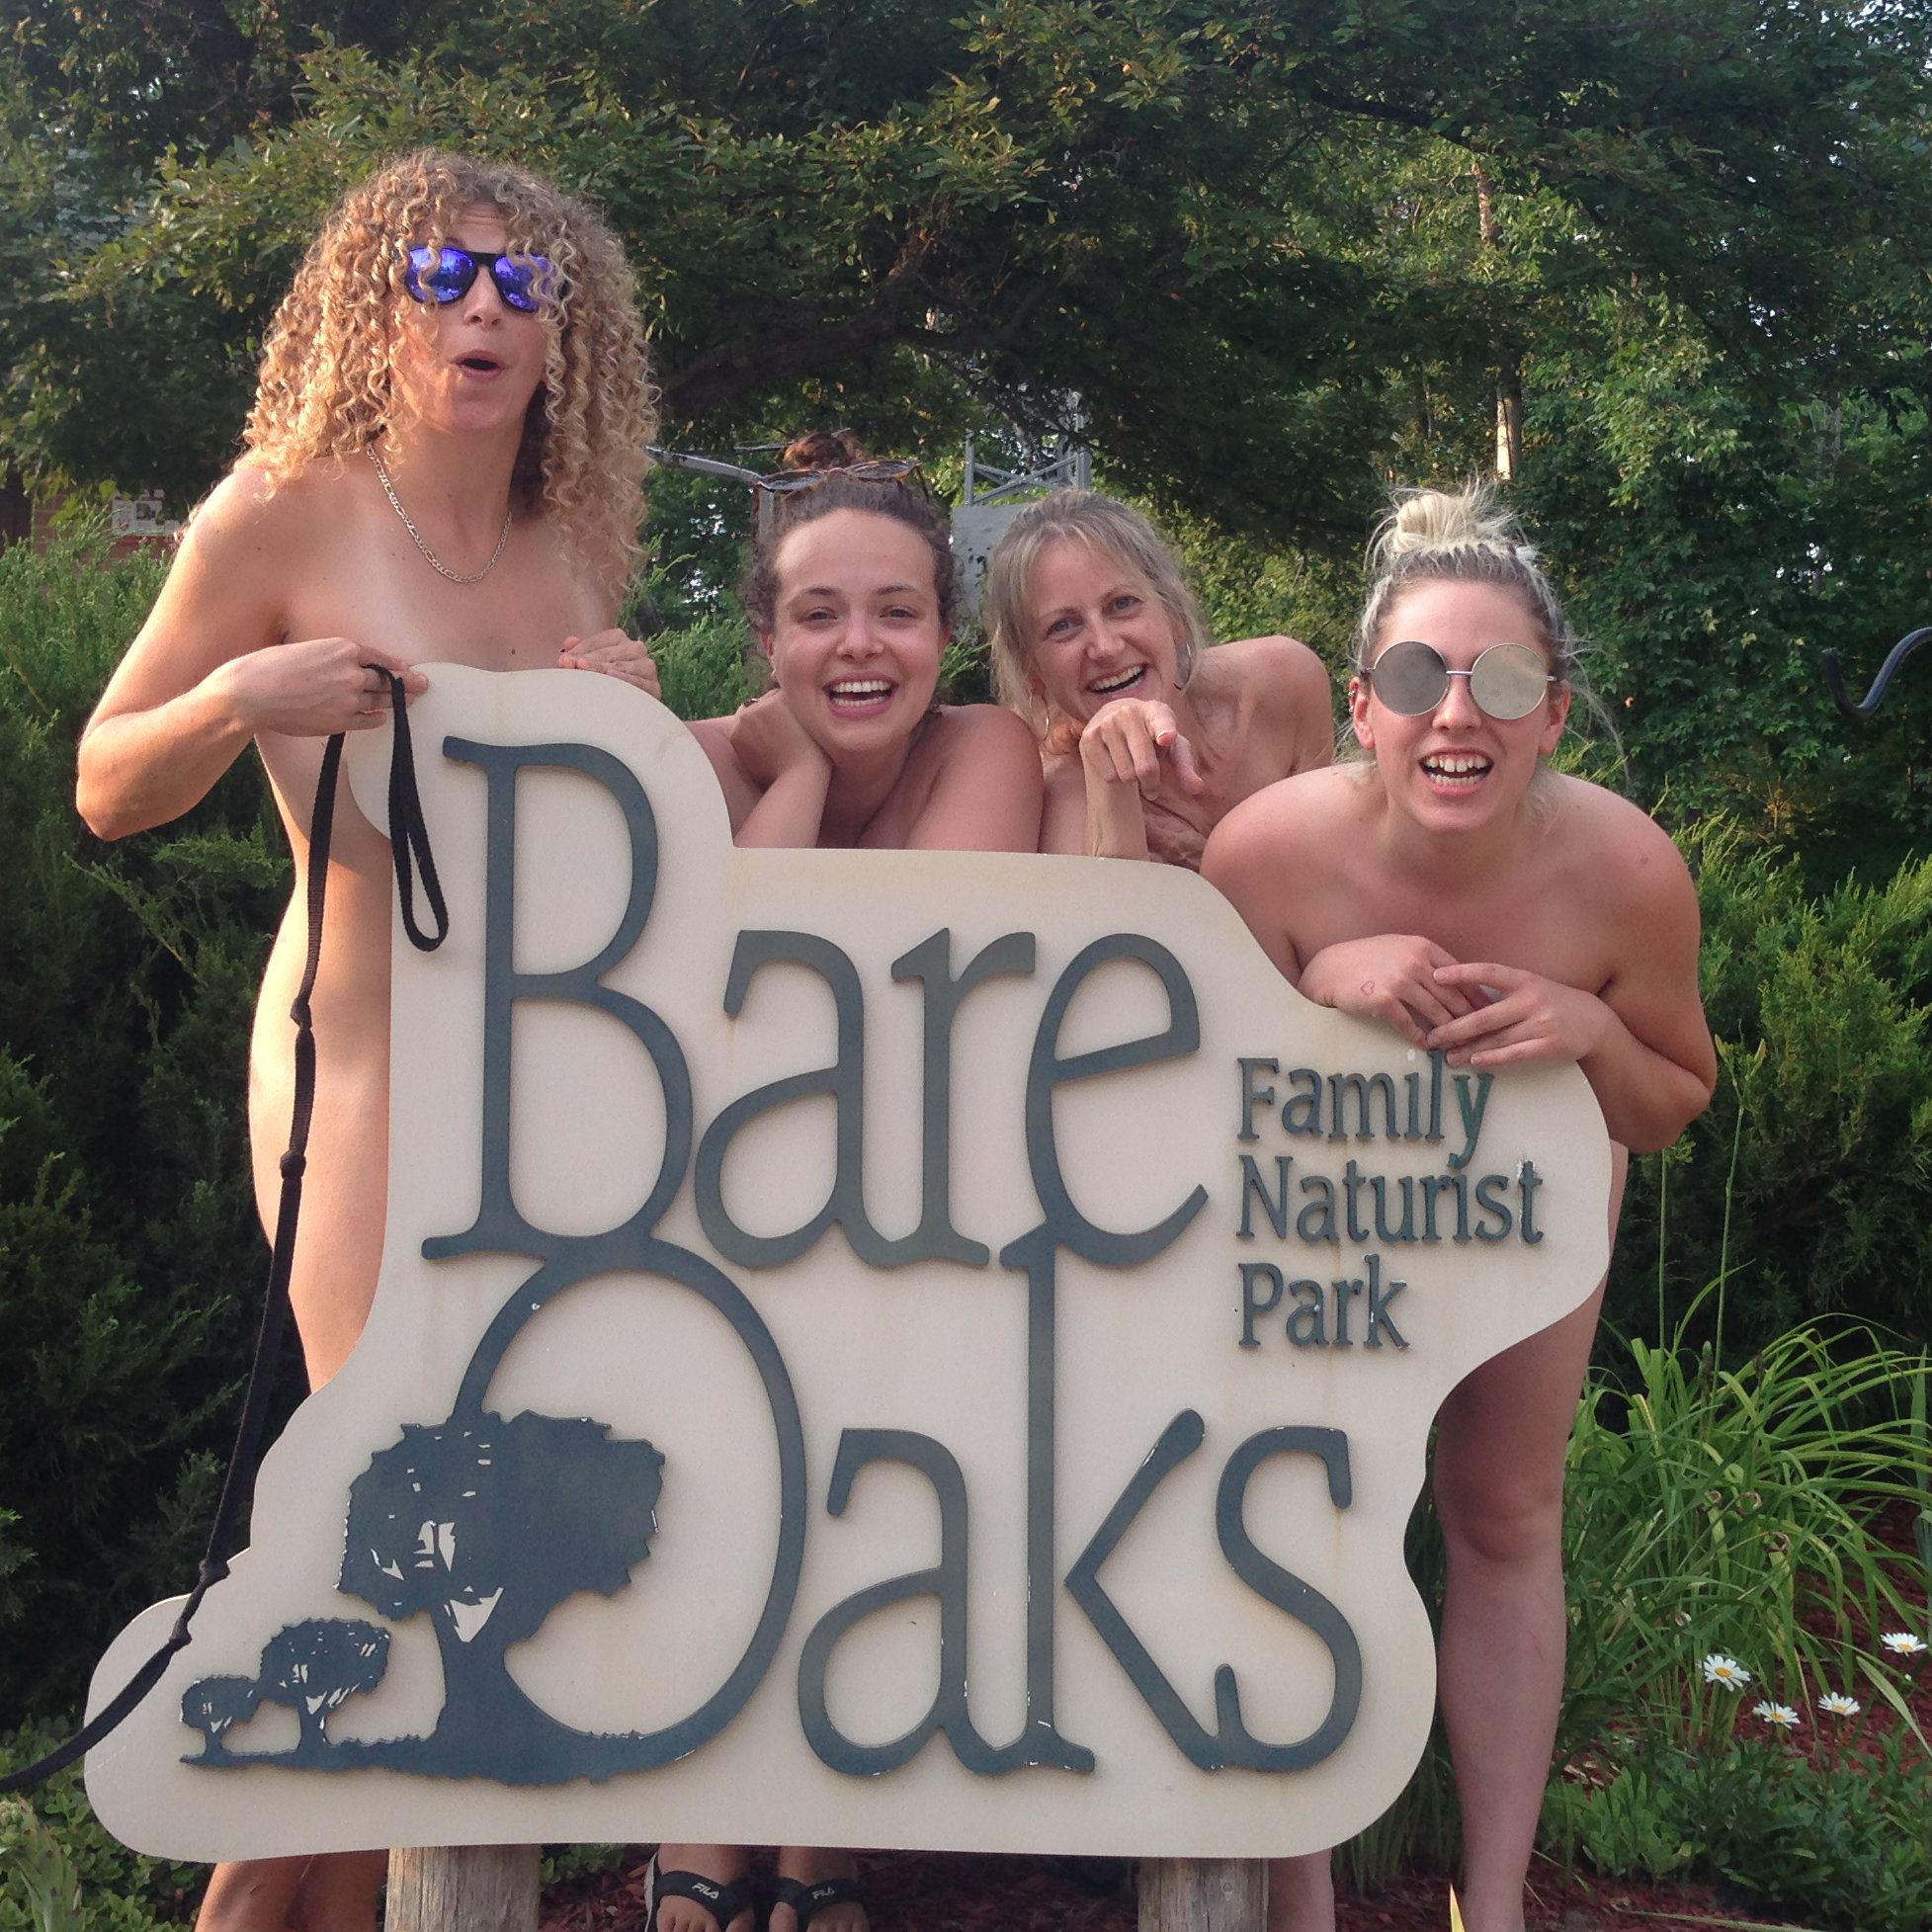 https://www.bareoaks.ca/wp-content/uploads/2018/11/July2018-nude-comedy-1.jpg